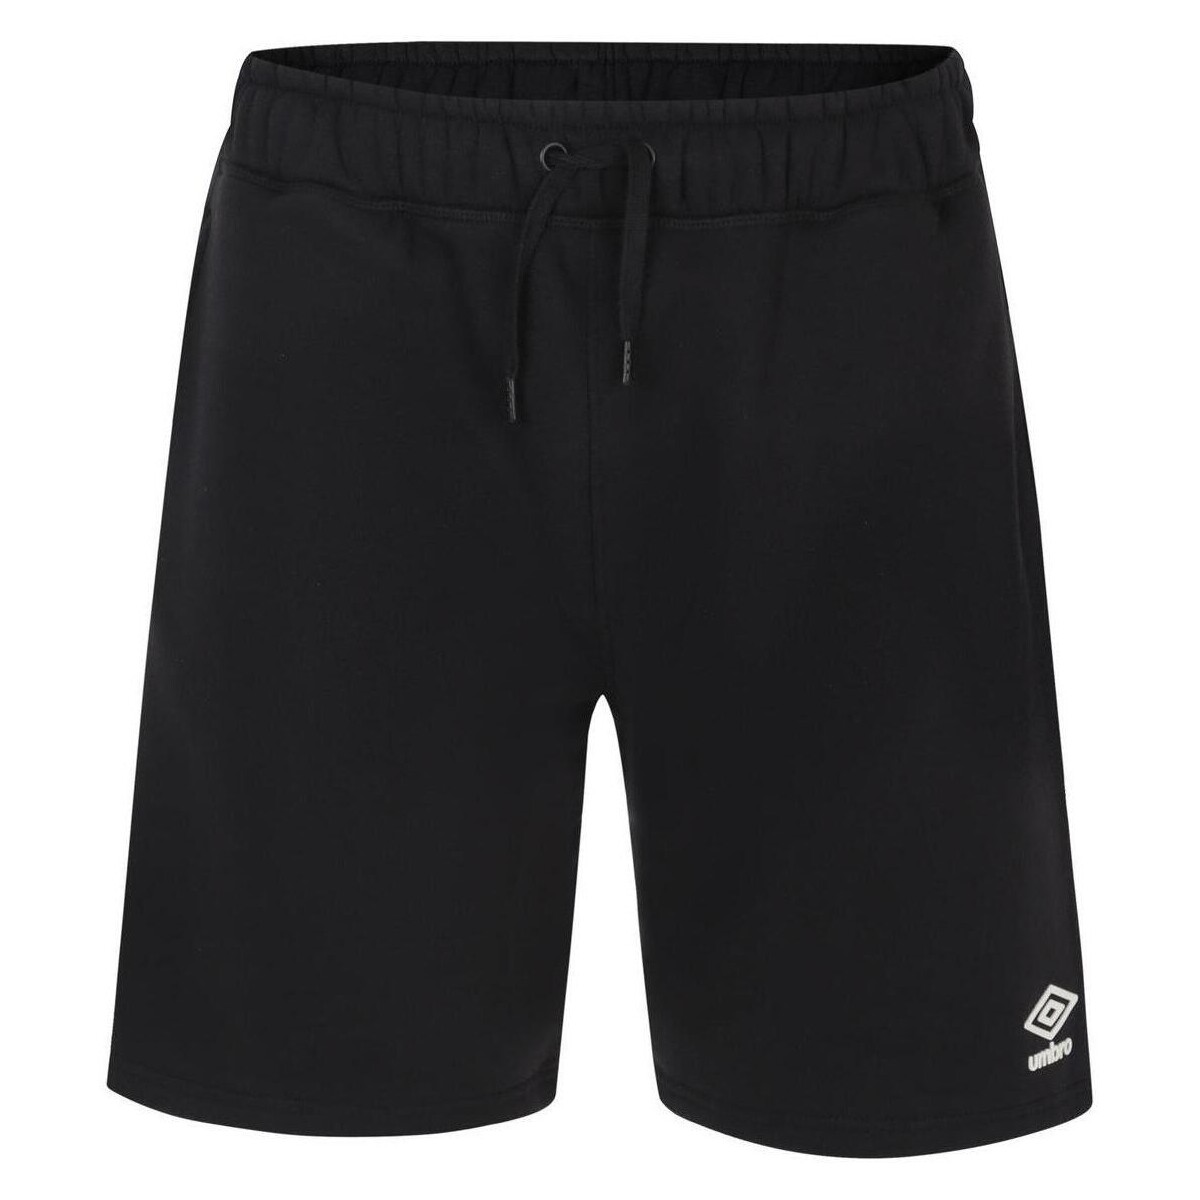 textil Hombre Shorts / Bermudas Umbro Pro Negro